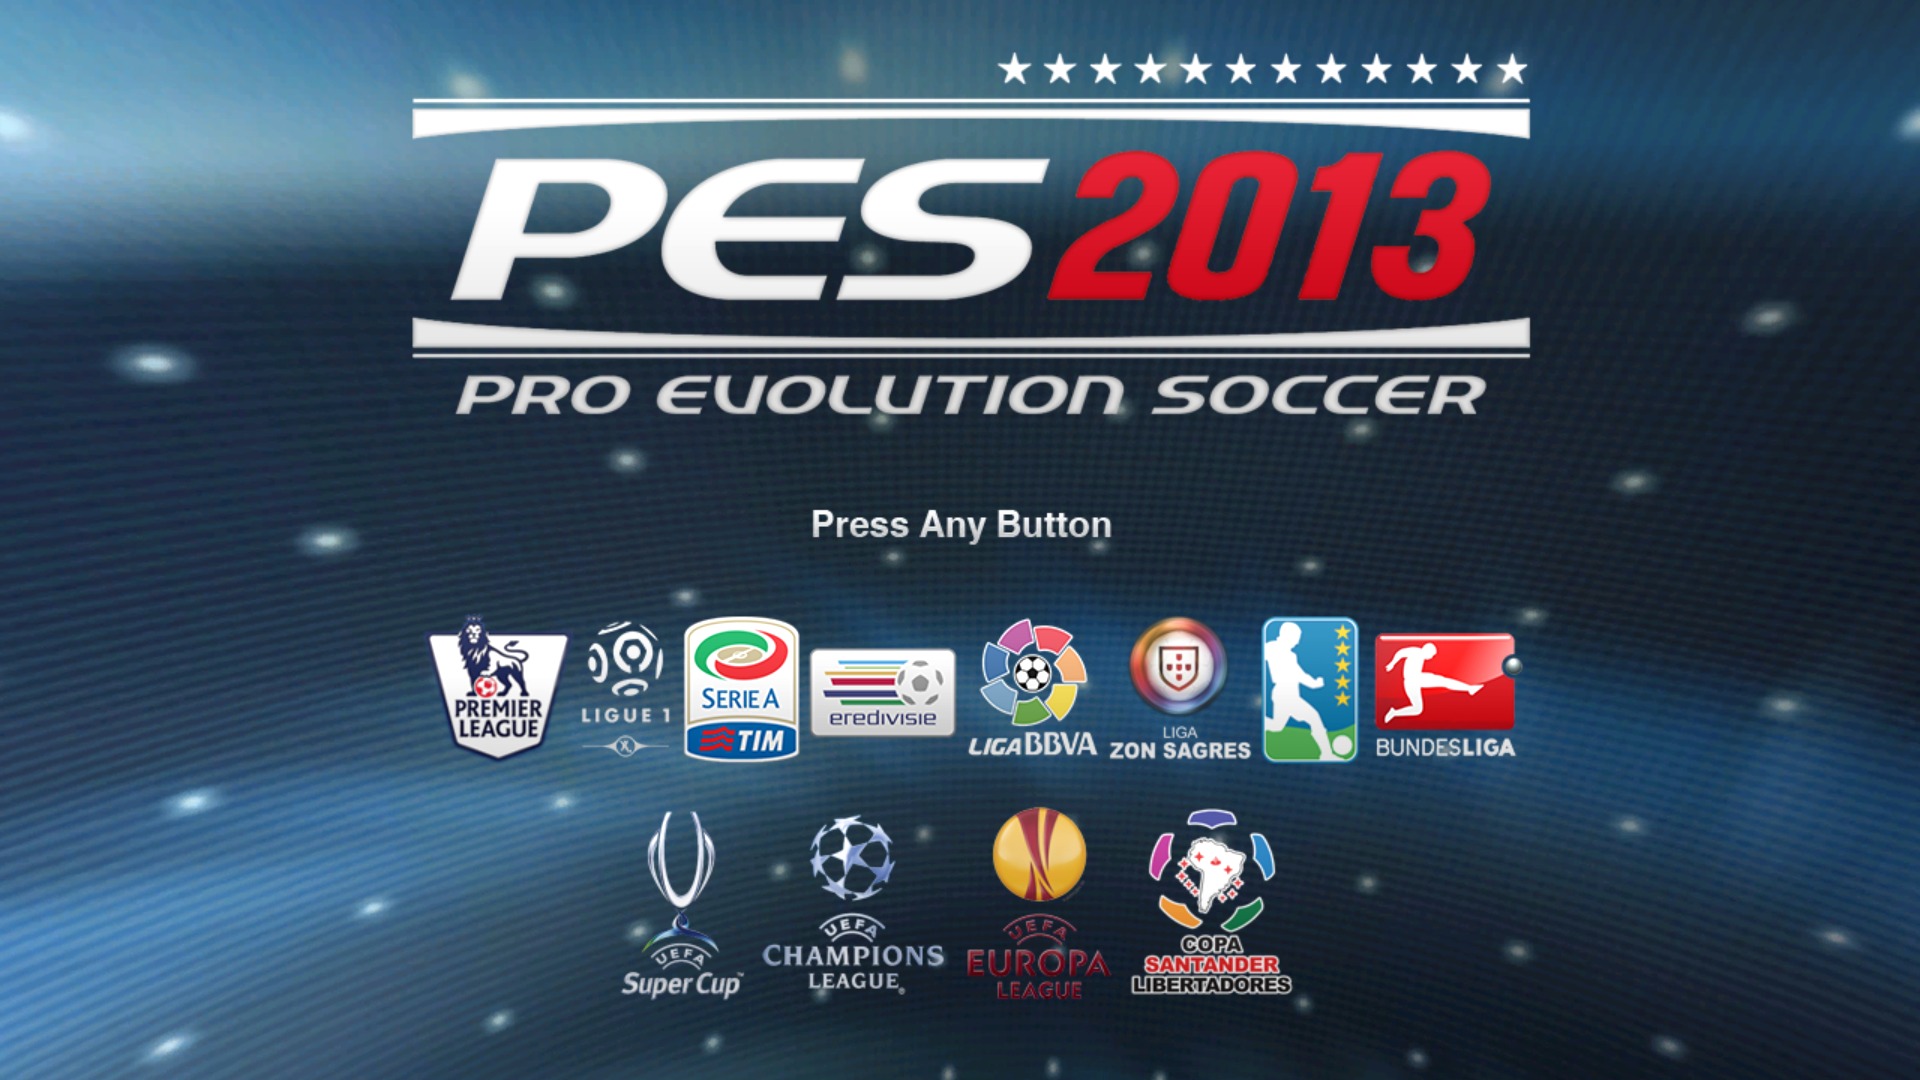 pes 2013 pro evolution soccer